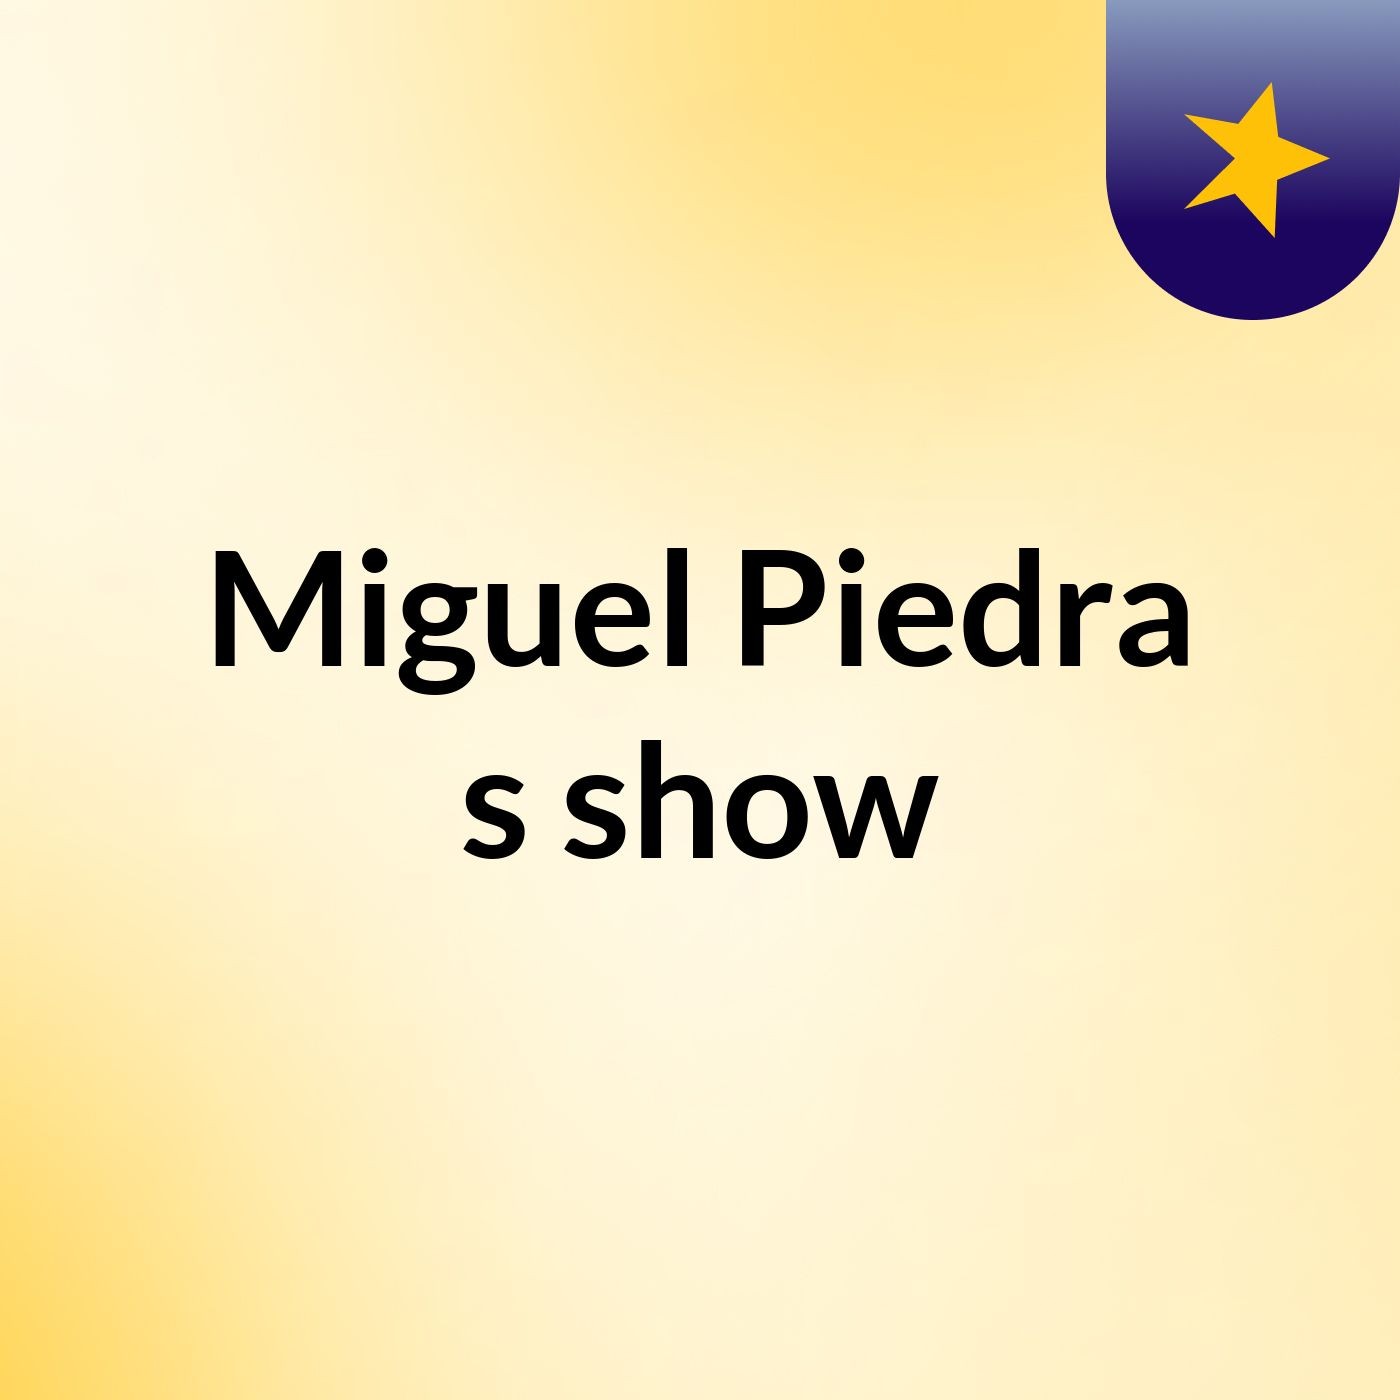 Miguel Piedra's show